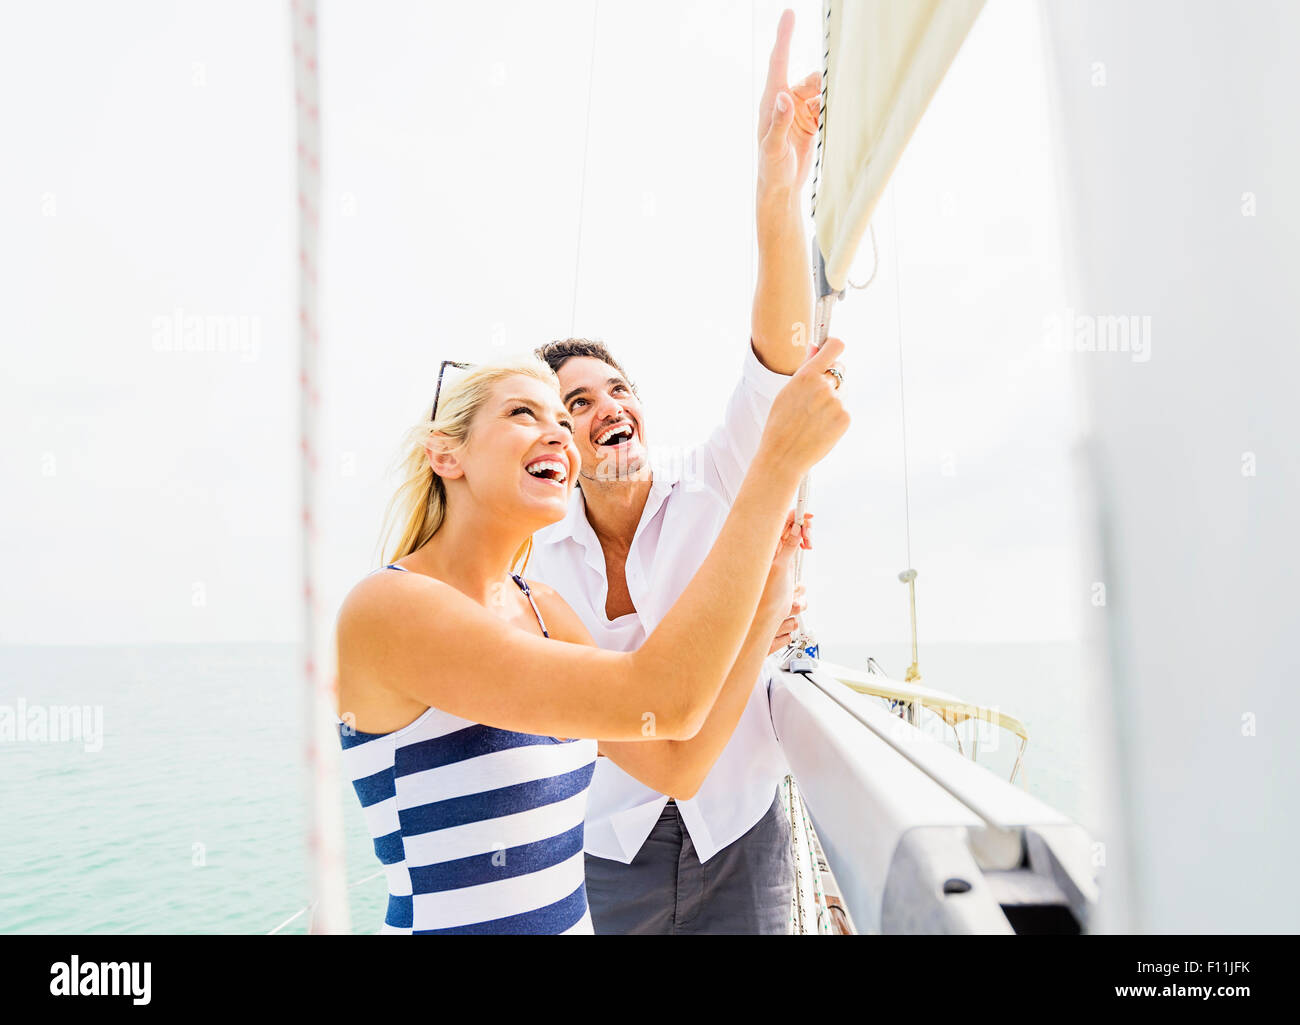 Paar, die Anpassung der Takelage auf Segelboot Stockfoto